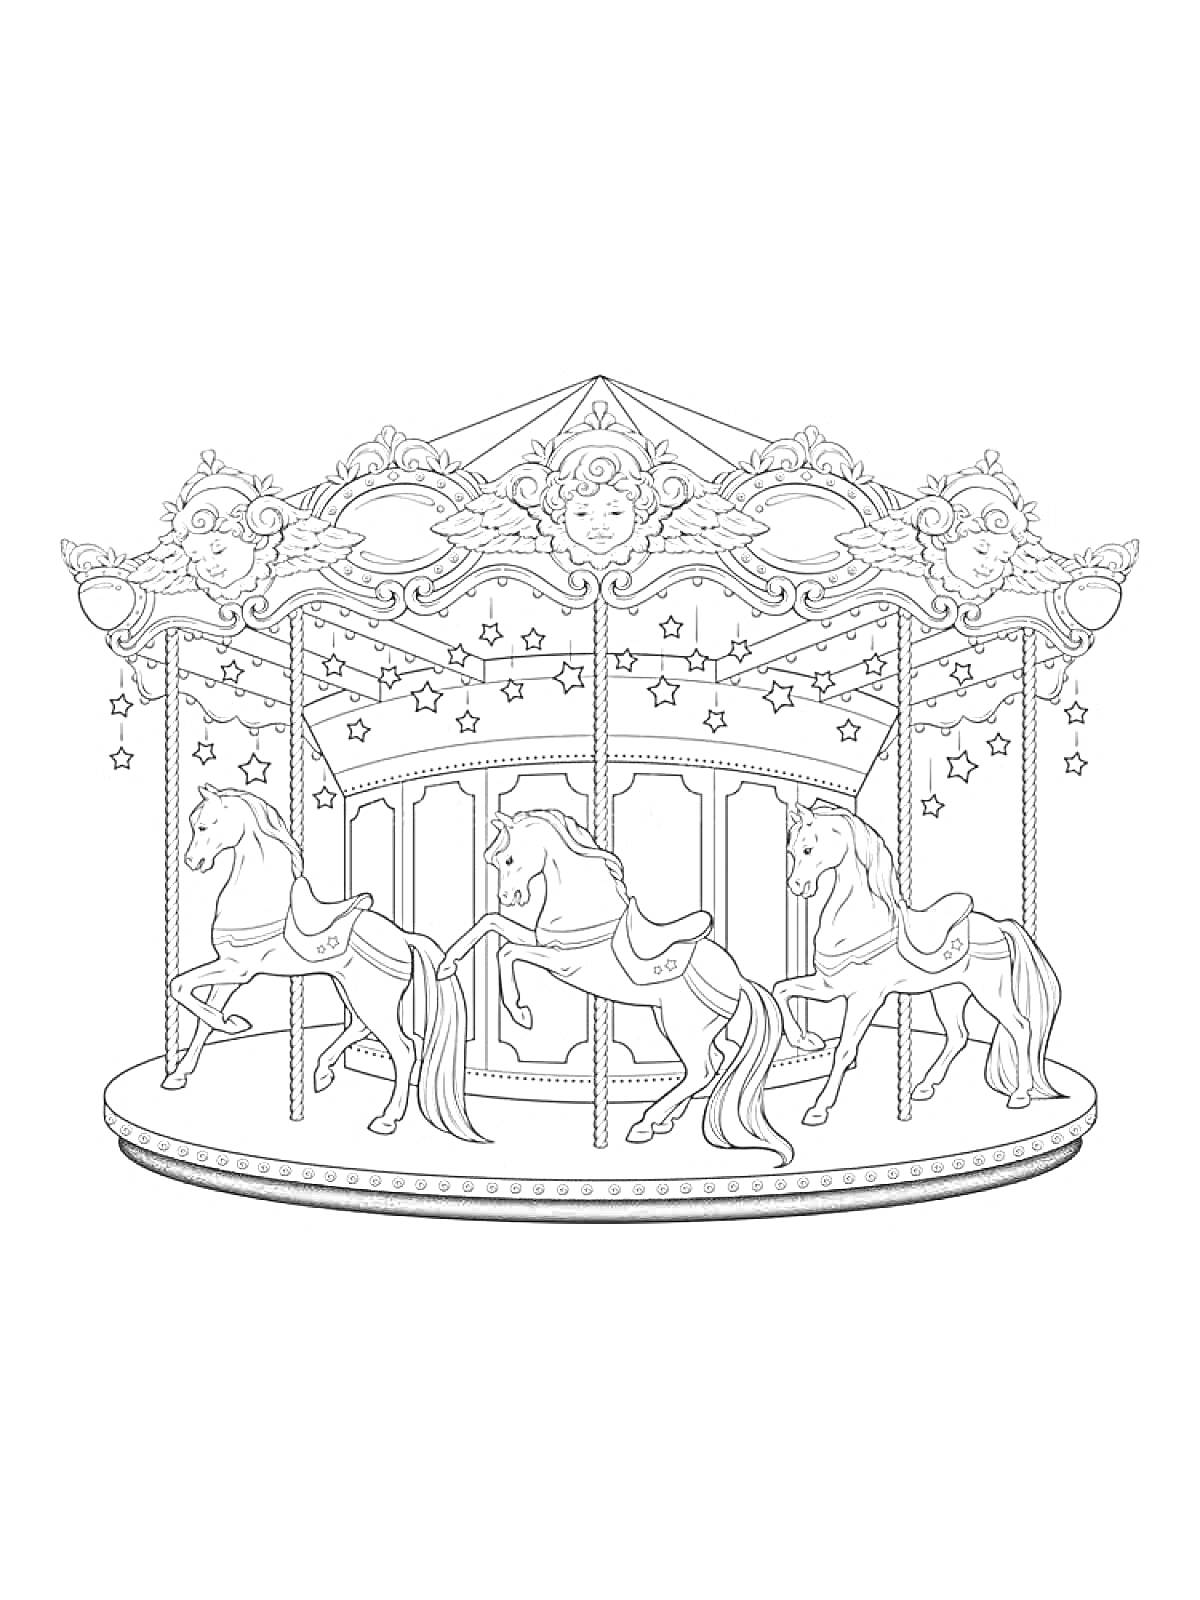 Раскраска Карусель с лошадками, украшенная звездами и орнаментом.